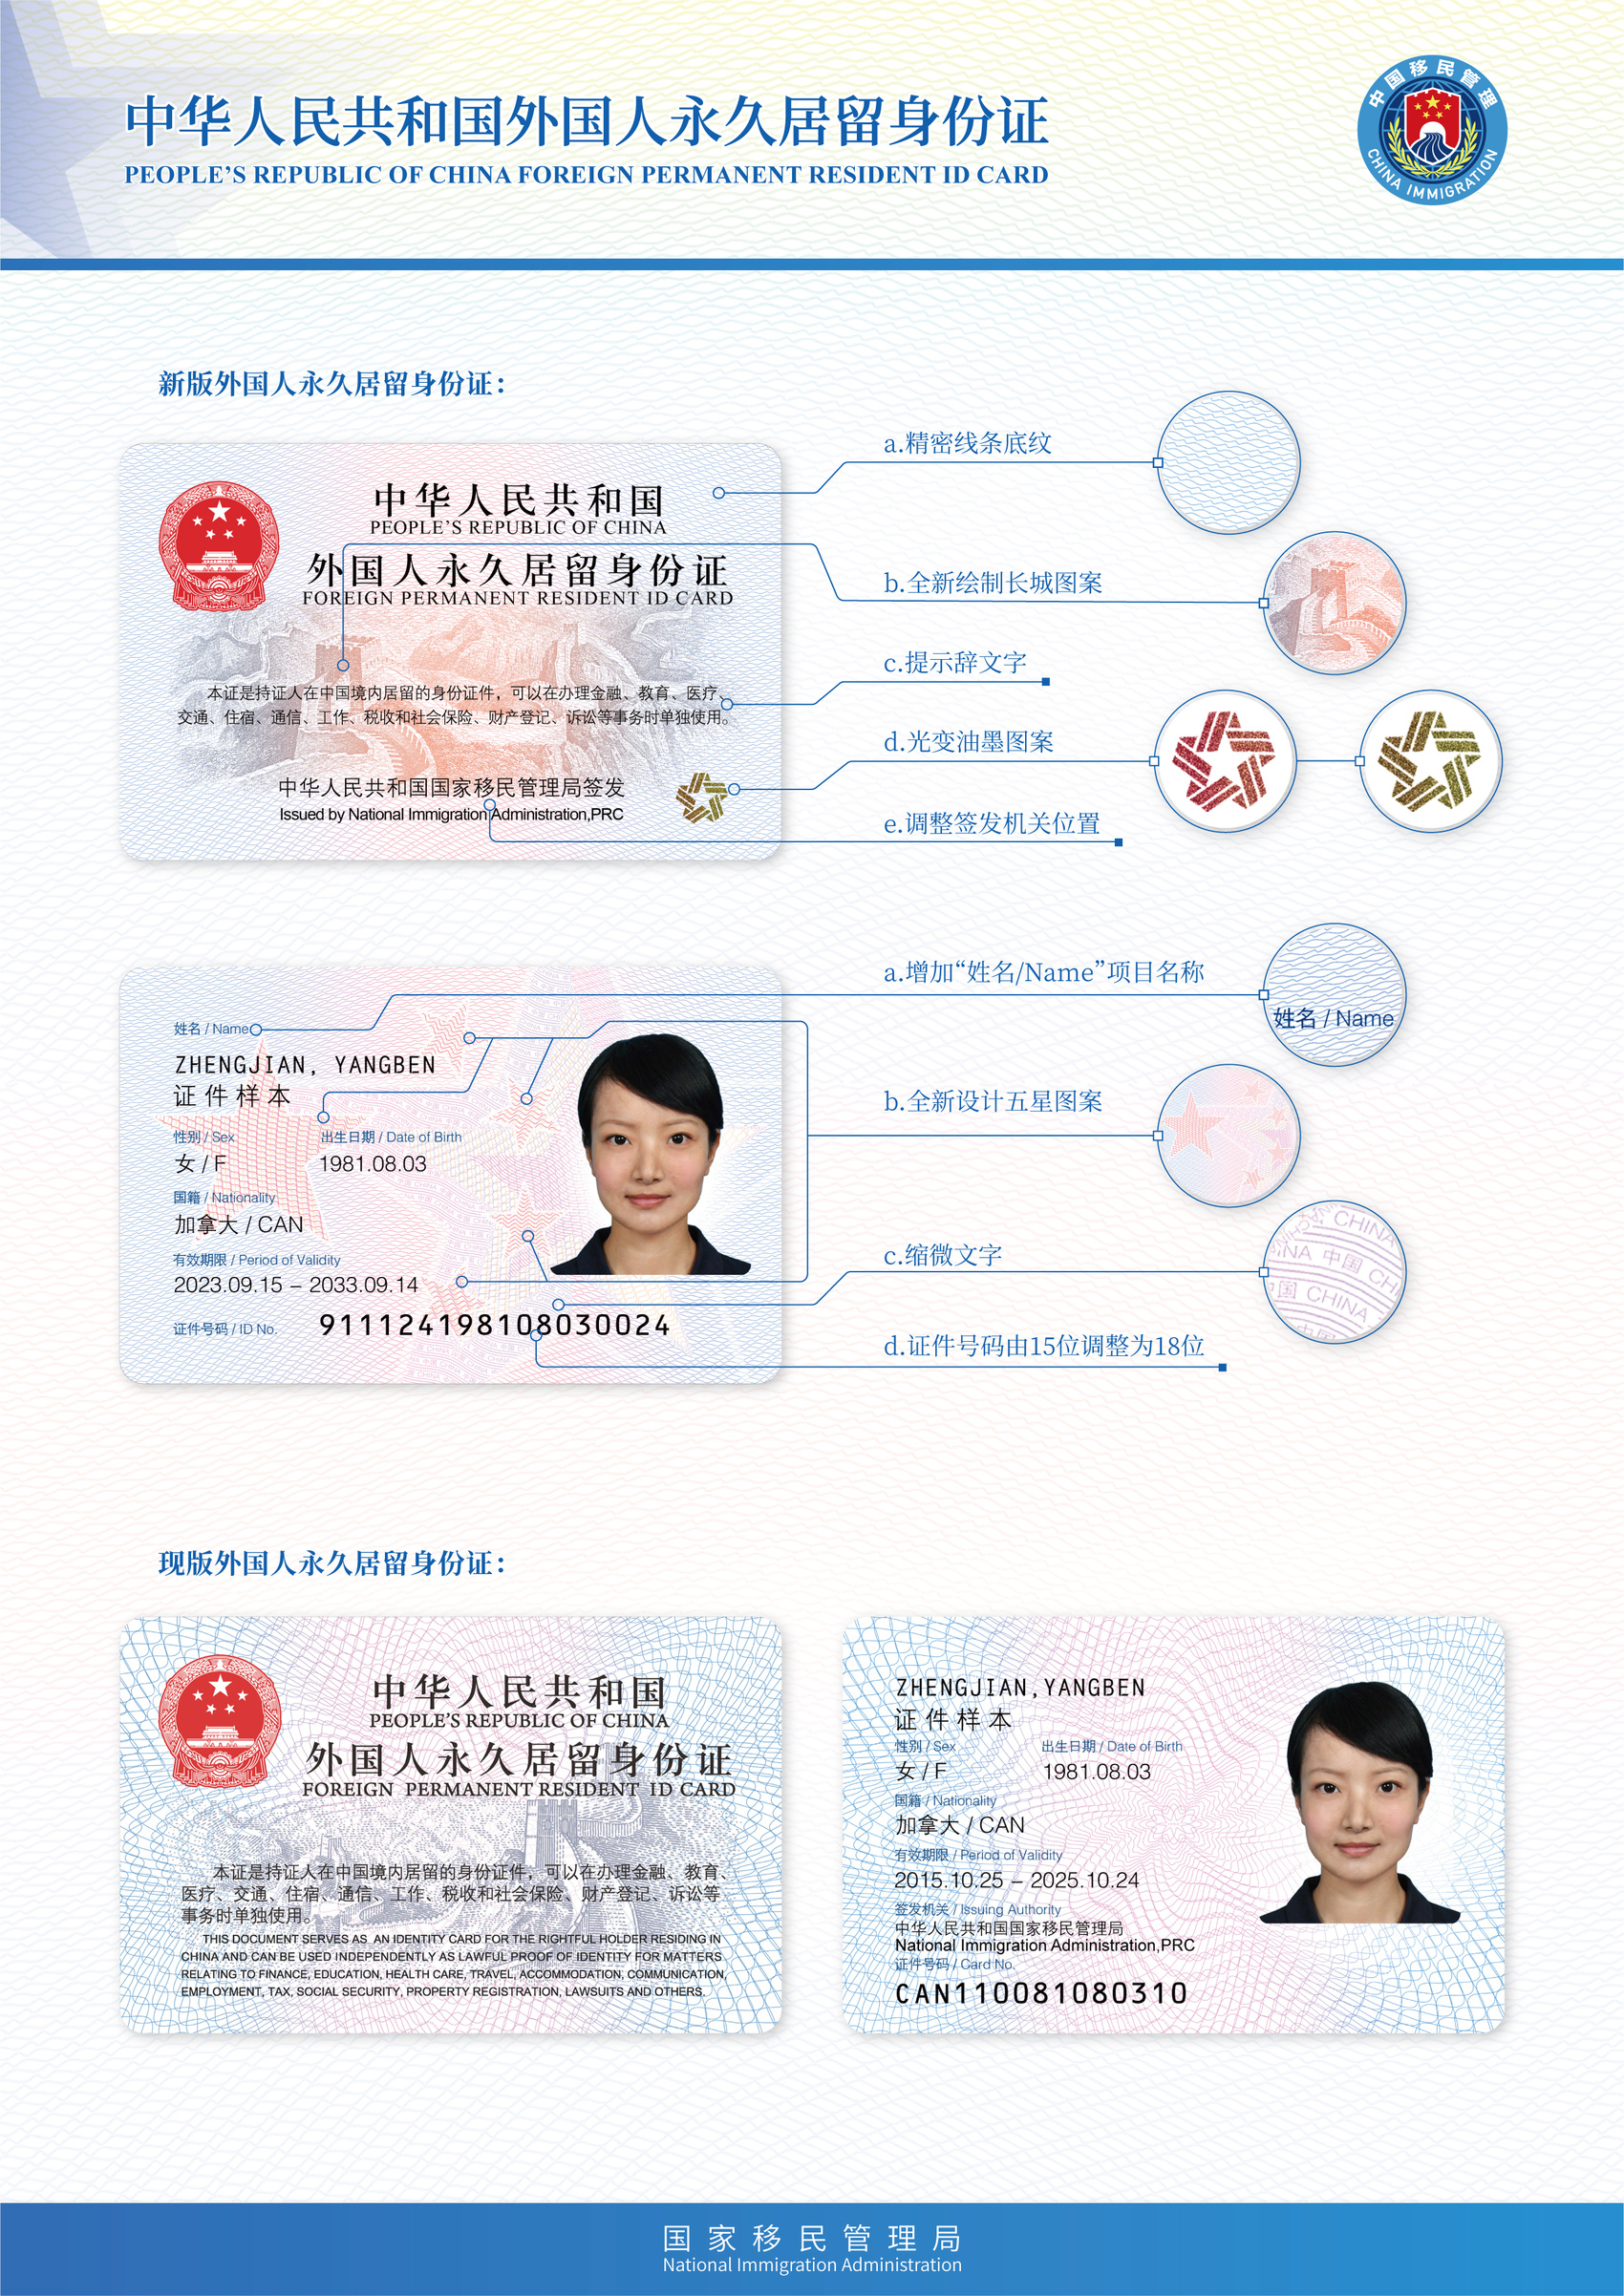 四川6人取得首批新版外国人永久居留身份证